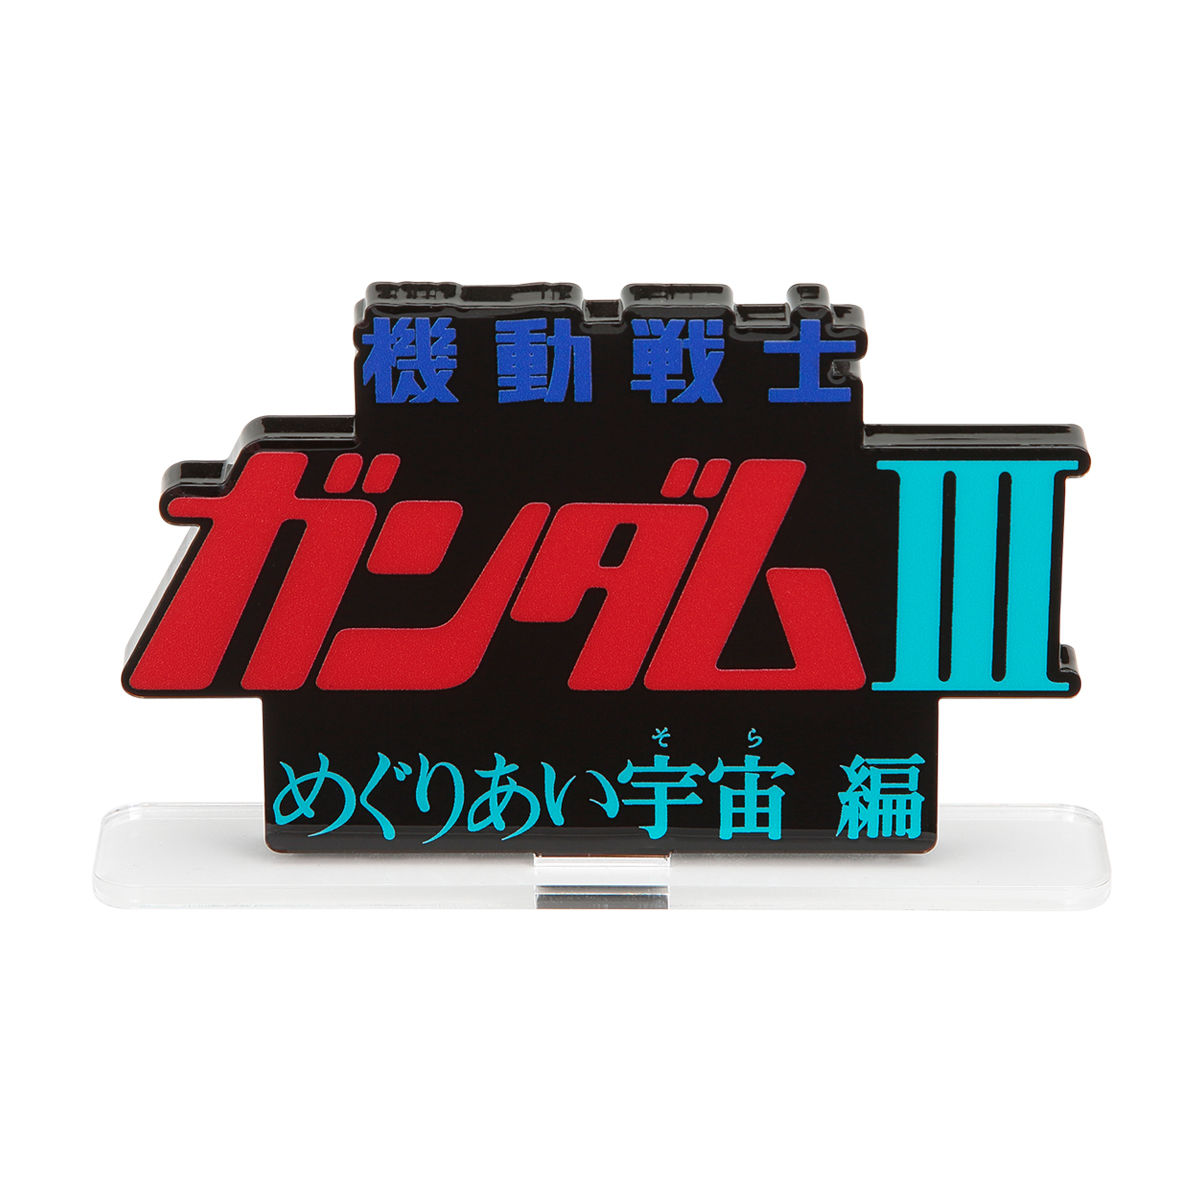 Acrylic Logo Diplay EX-Mobile Suit Gundam Movie Ⅲ